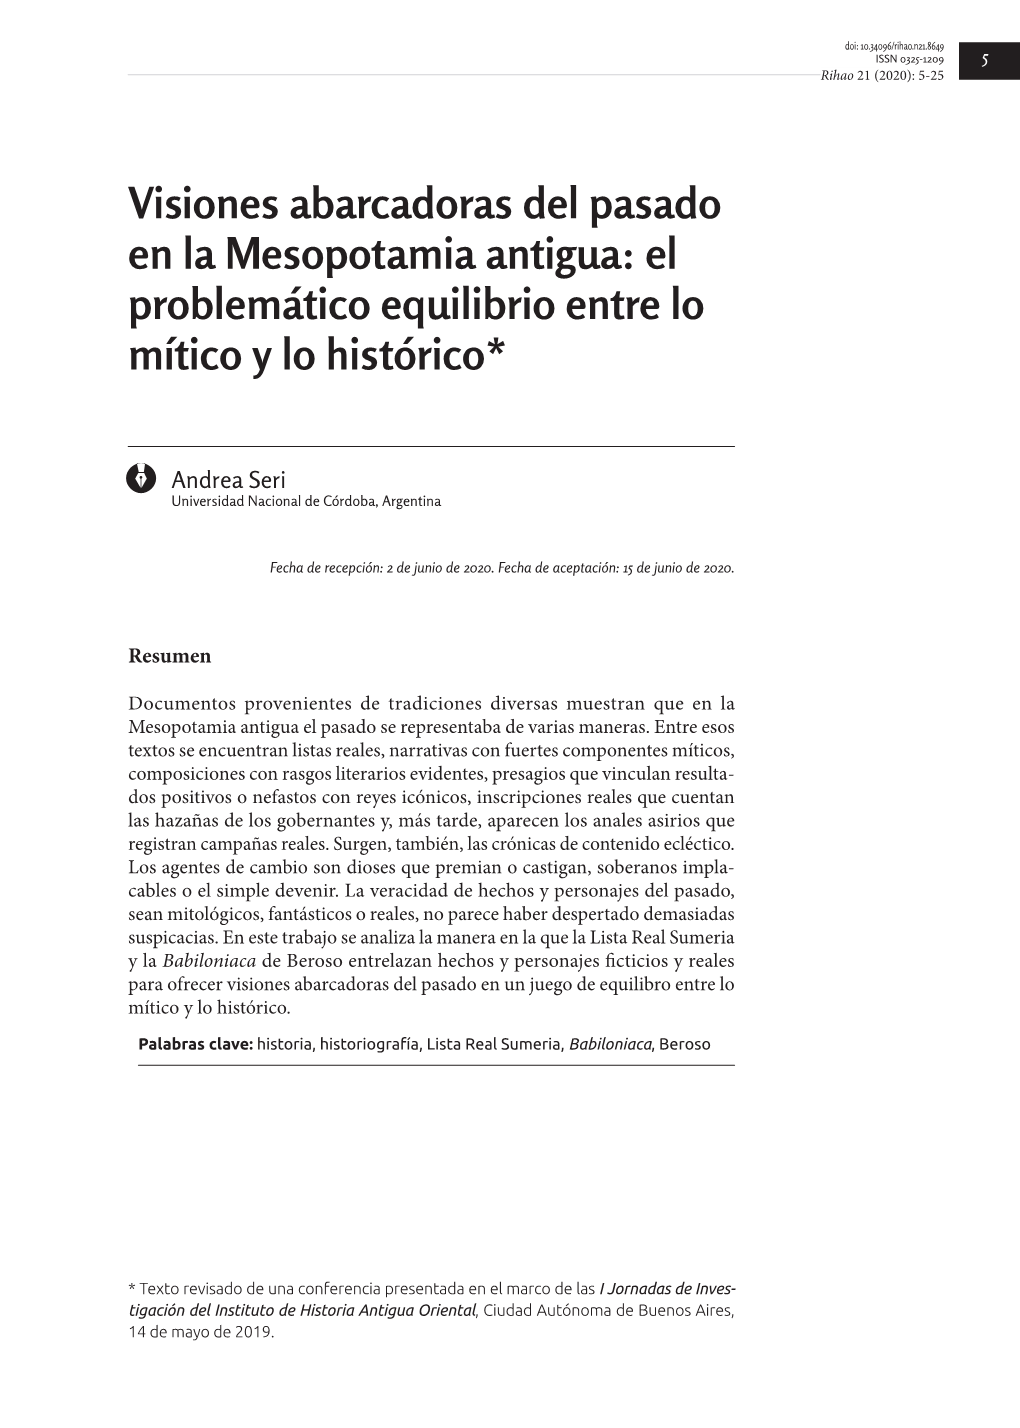 Visiones Abarcadoras Del Pasado En La Mesopotamia Antigua: El Problemático Equilibrio Entre Lo Mítico Y Lo Histórico*